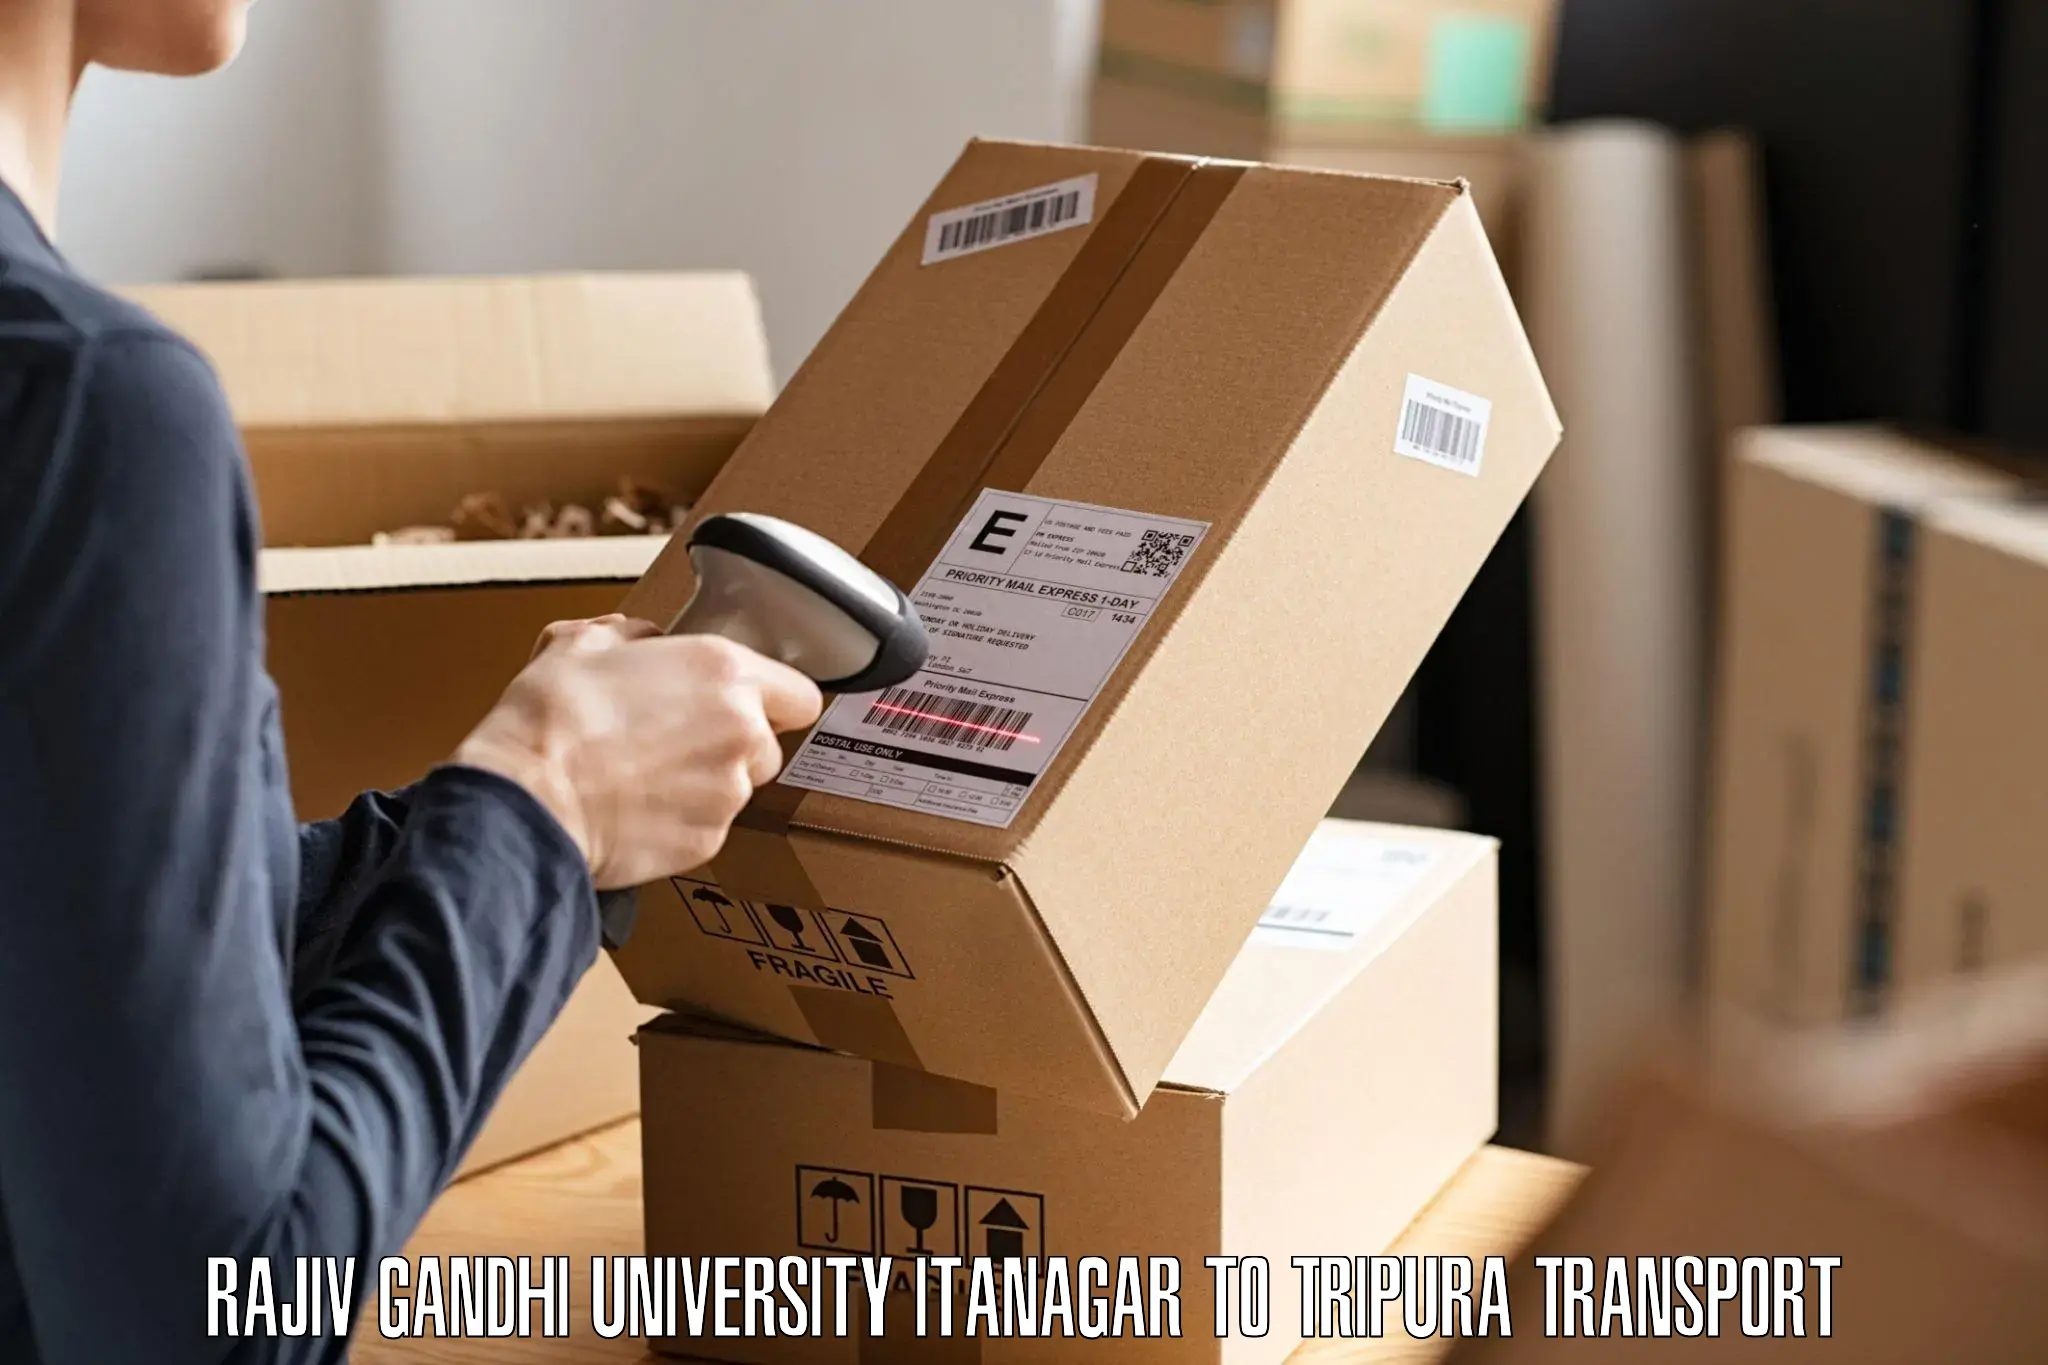 Furniture transport service in Rajiv Gandhi University Itanagar to Manu Bazar